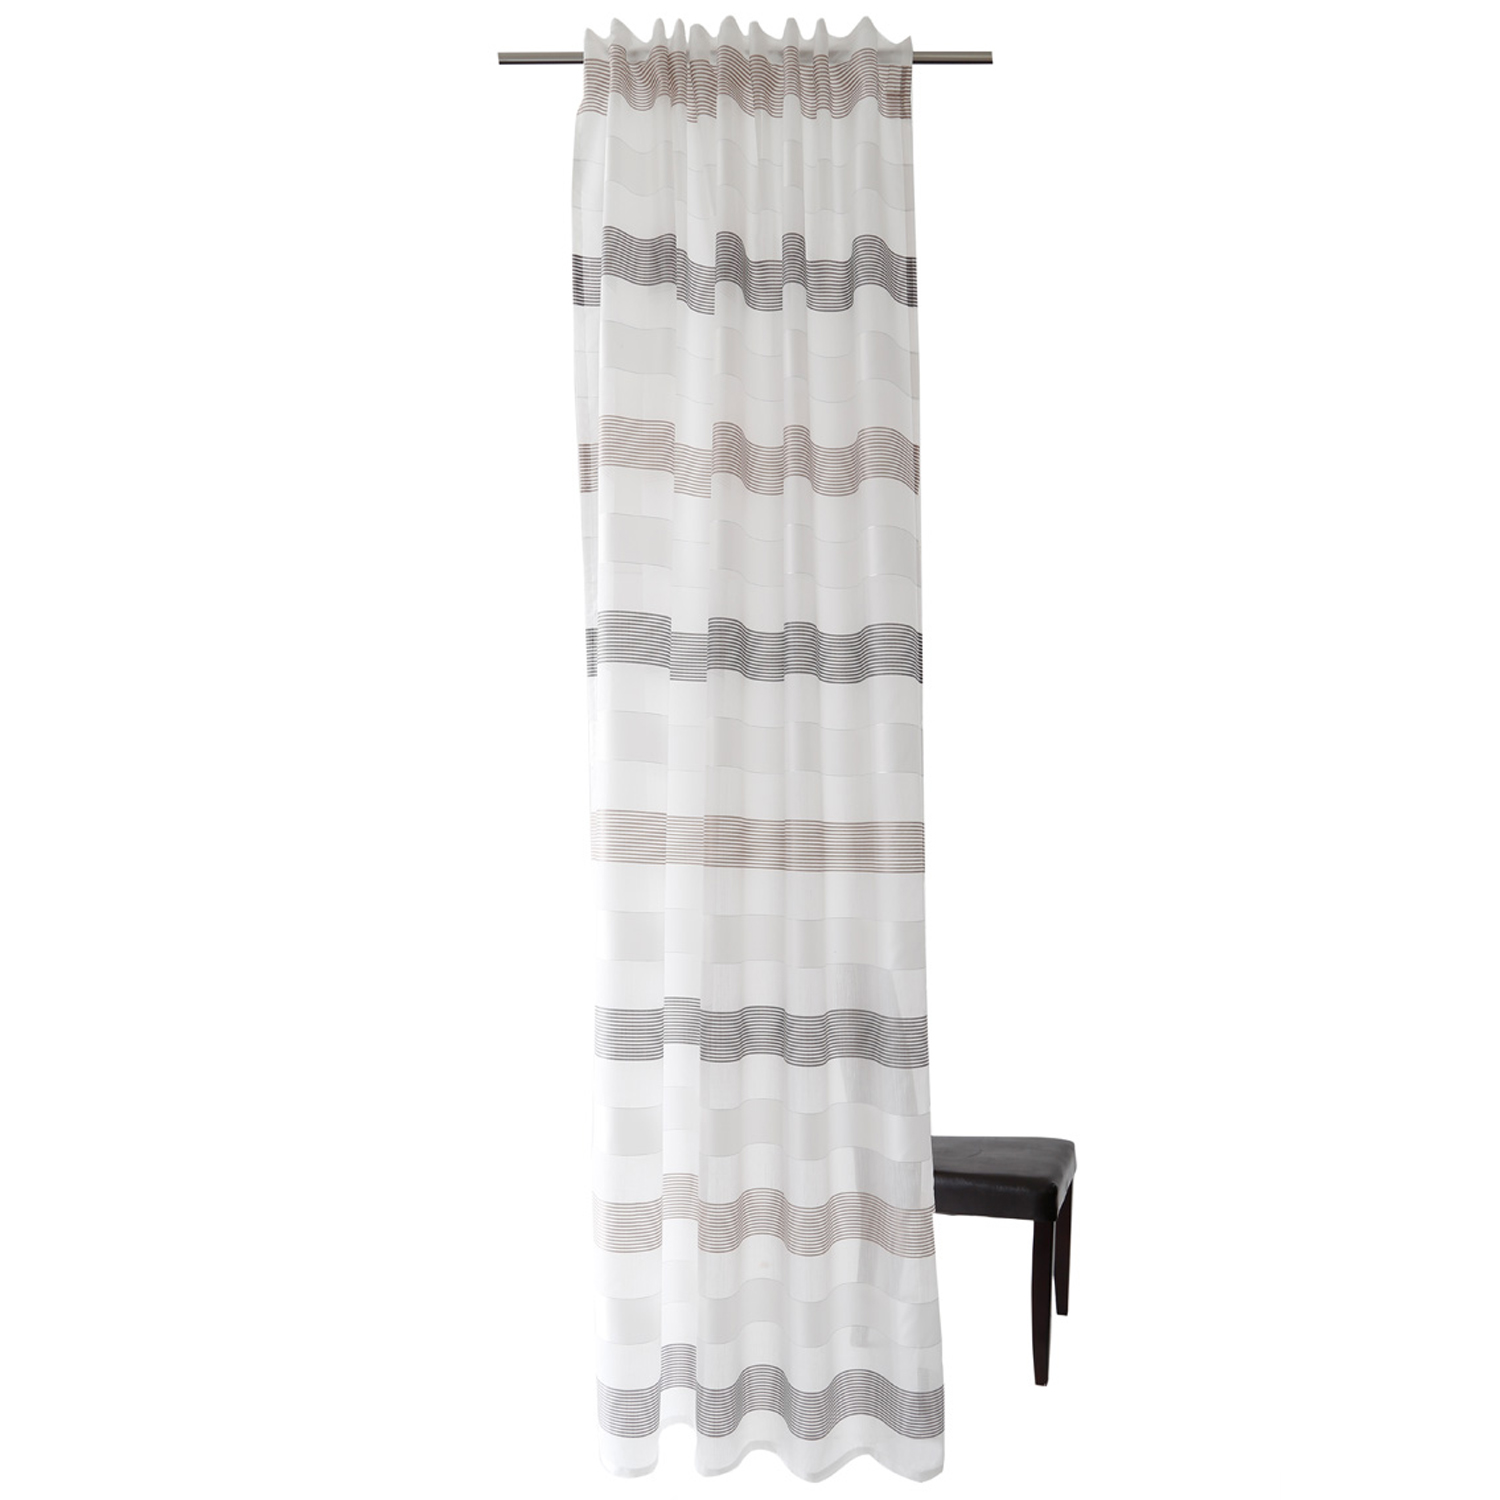 HOMING Vorhang mit verdeckten Schlaufen Lena grau/braun Halbtransparenter Vorhang mit Querstreifen